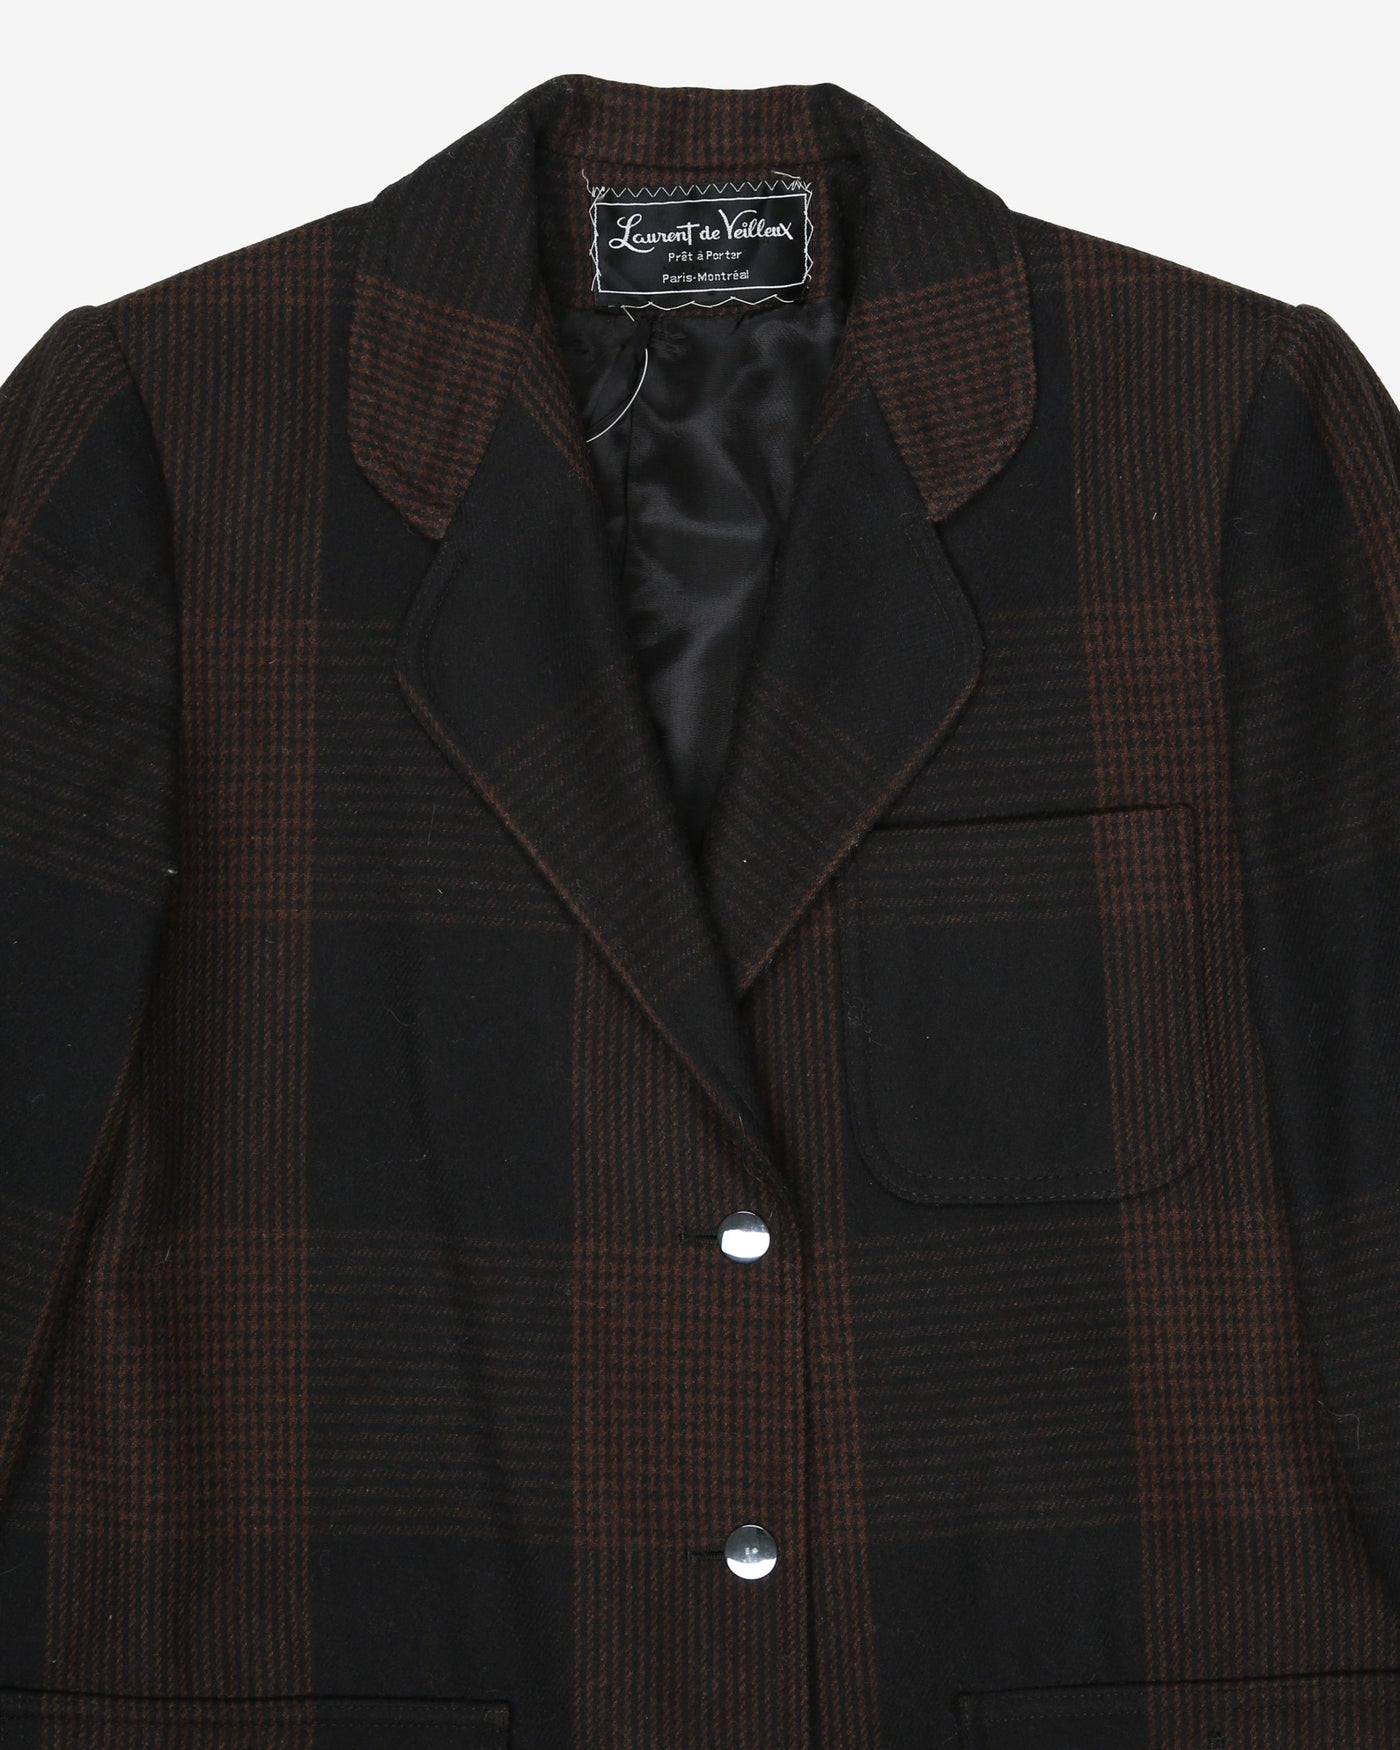 1970's Laurent de Veilleux black and brown jacket - S